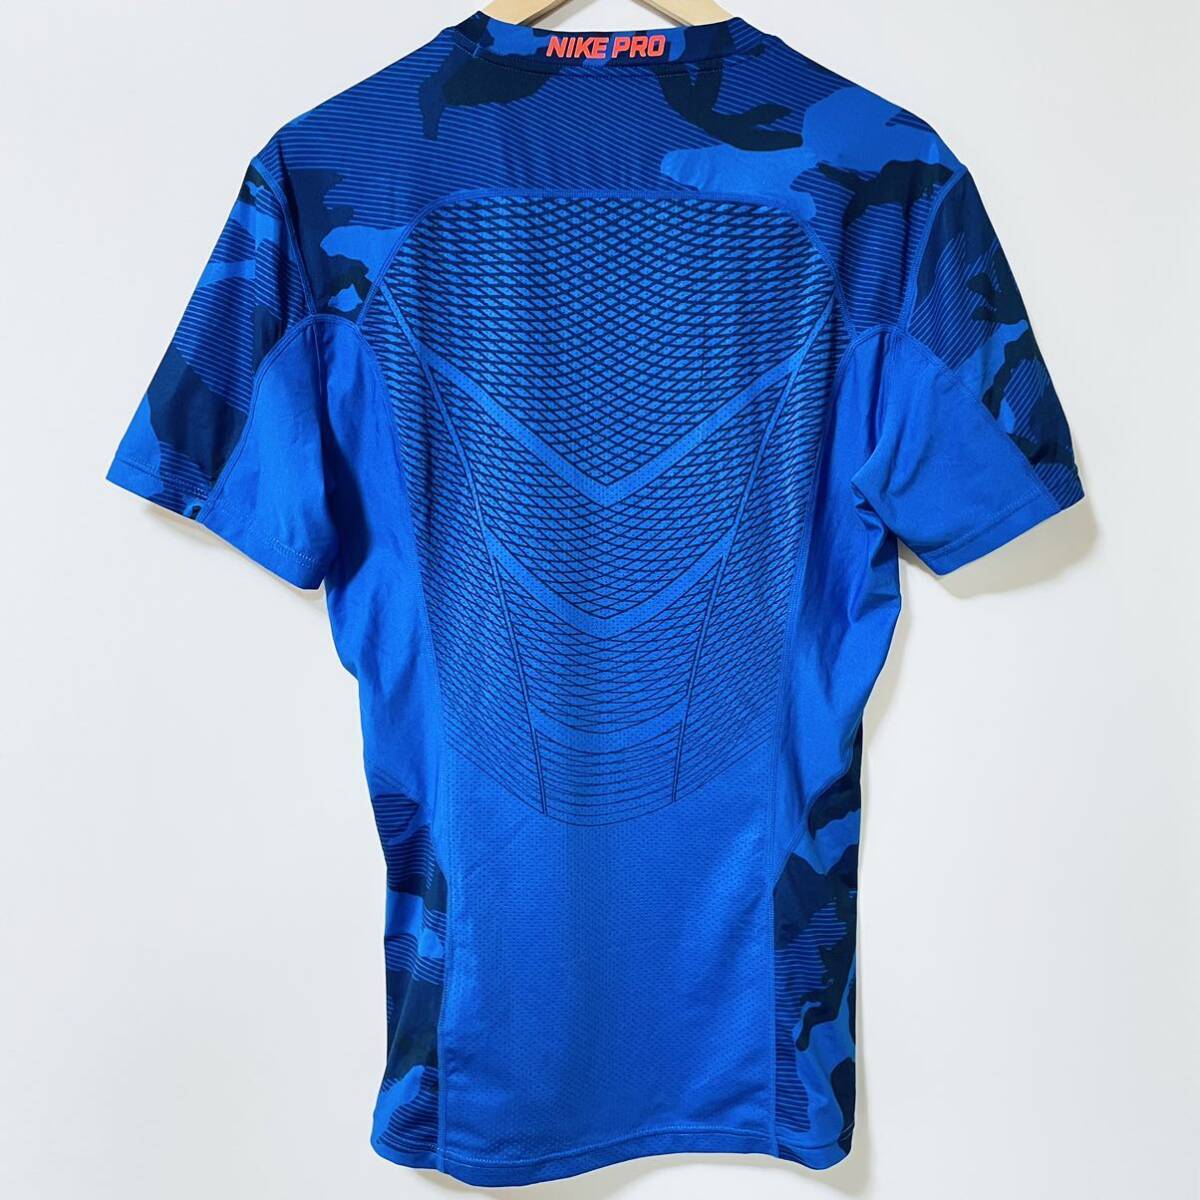 H7887gg NIKE PRO（ナイキプロ） サイズL 半袖Tシャツ 青 ブルー ネイビー メンズ スポーツウエア Dri-FIT （ドライフィット） 通気性の画像2